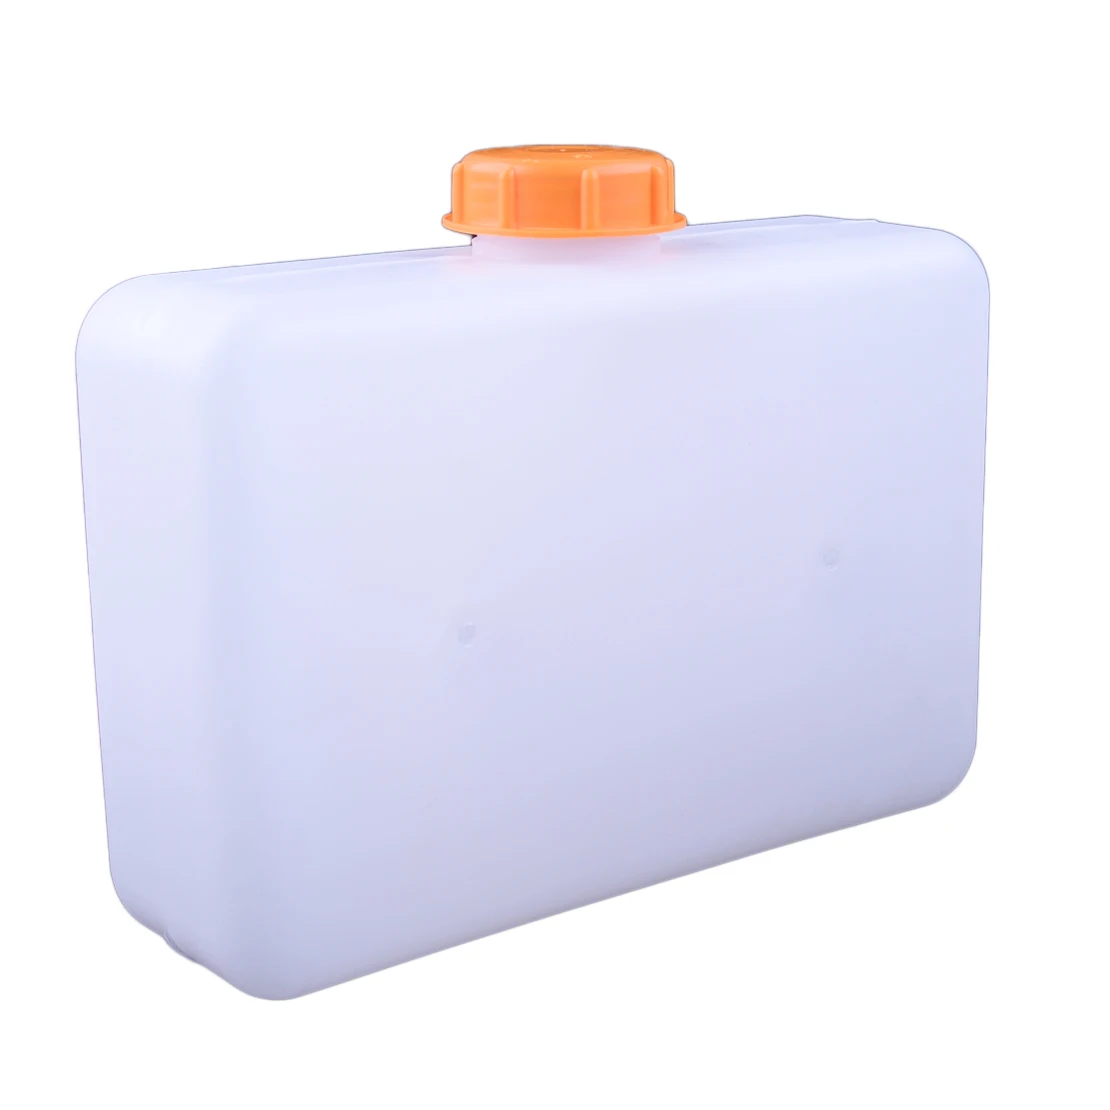 CITALL 5L топливный бак Емкость белый пластик стояночный нагреватель для Webasto Eberspacher Автомобиль Грузовик Лодка Караван